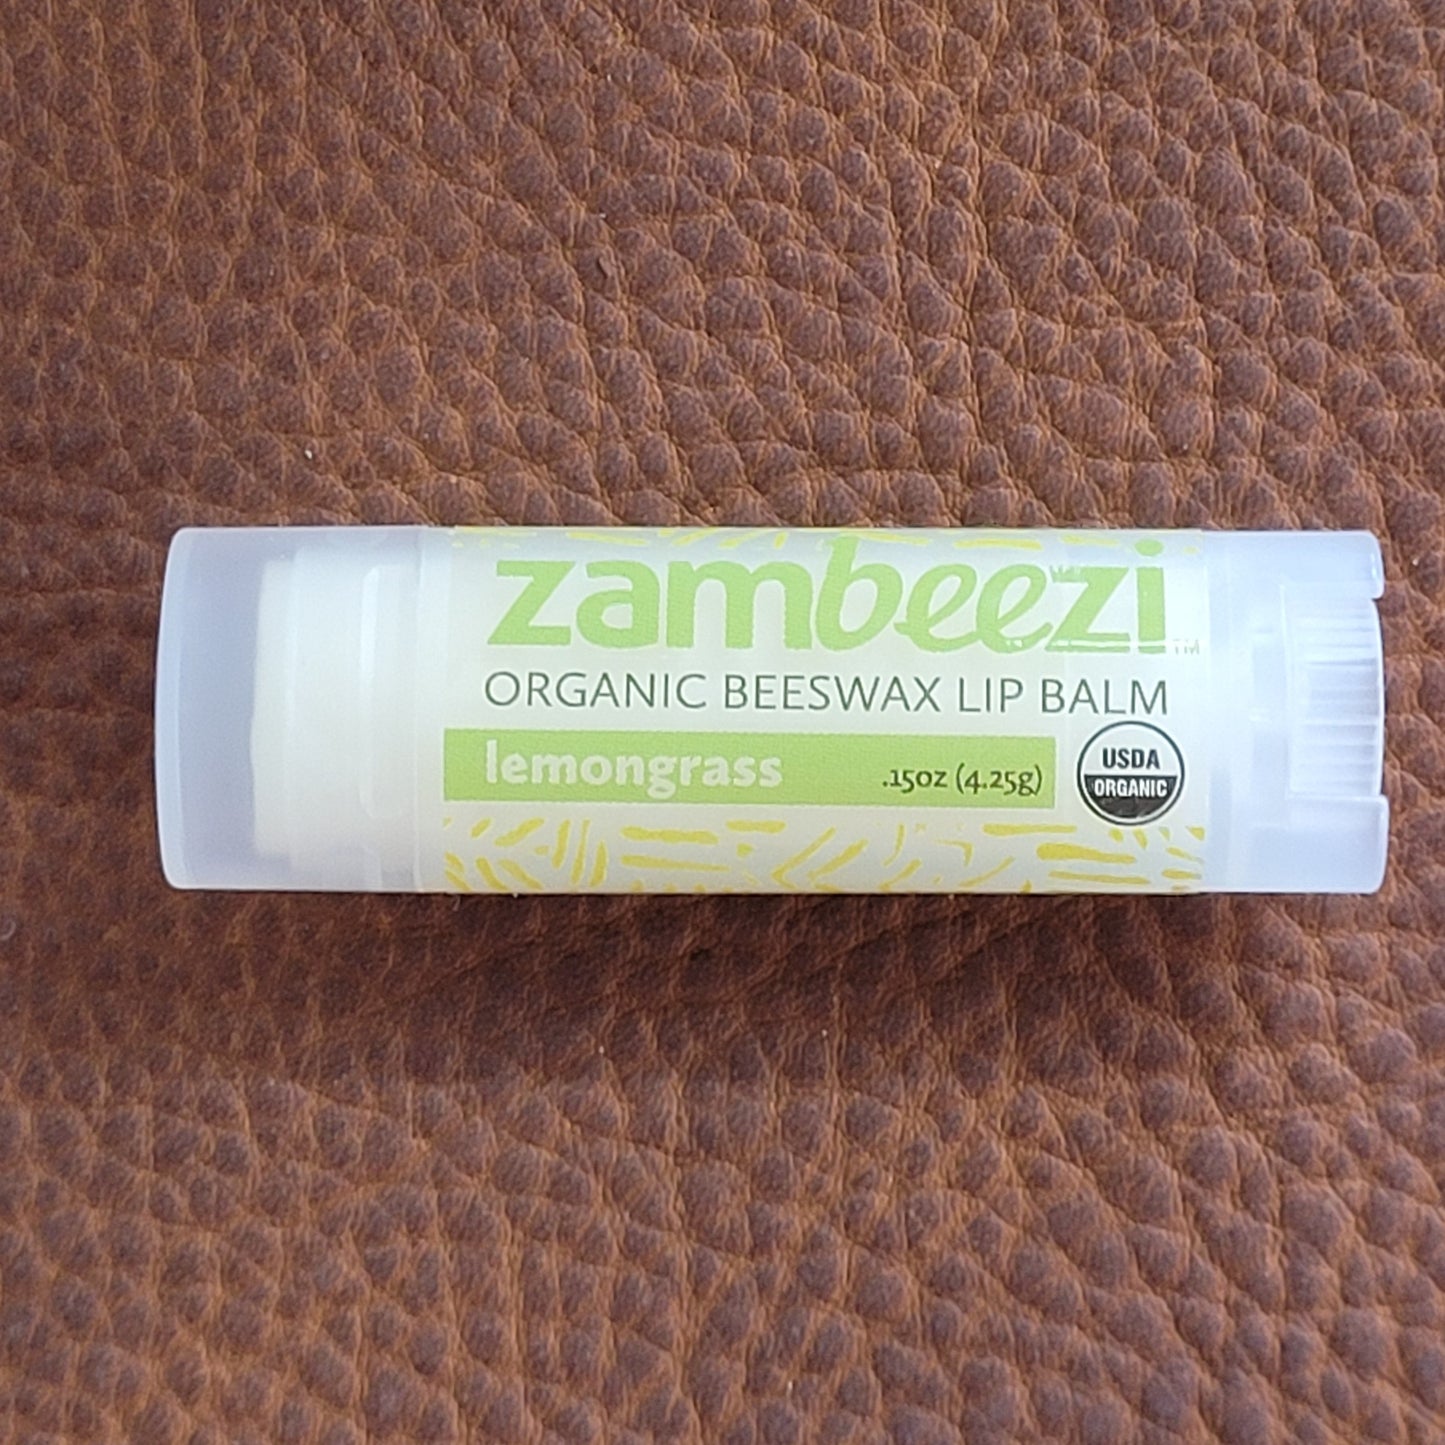 Lemongrass Beeswax Lip Balm by Zambeezi